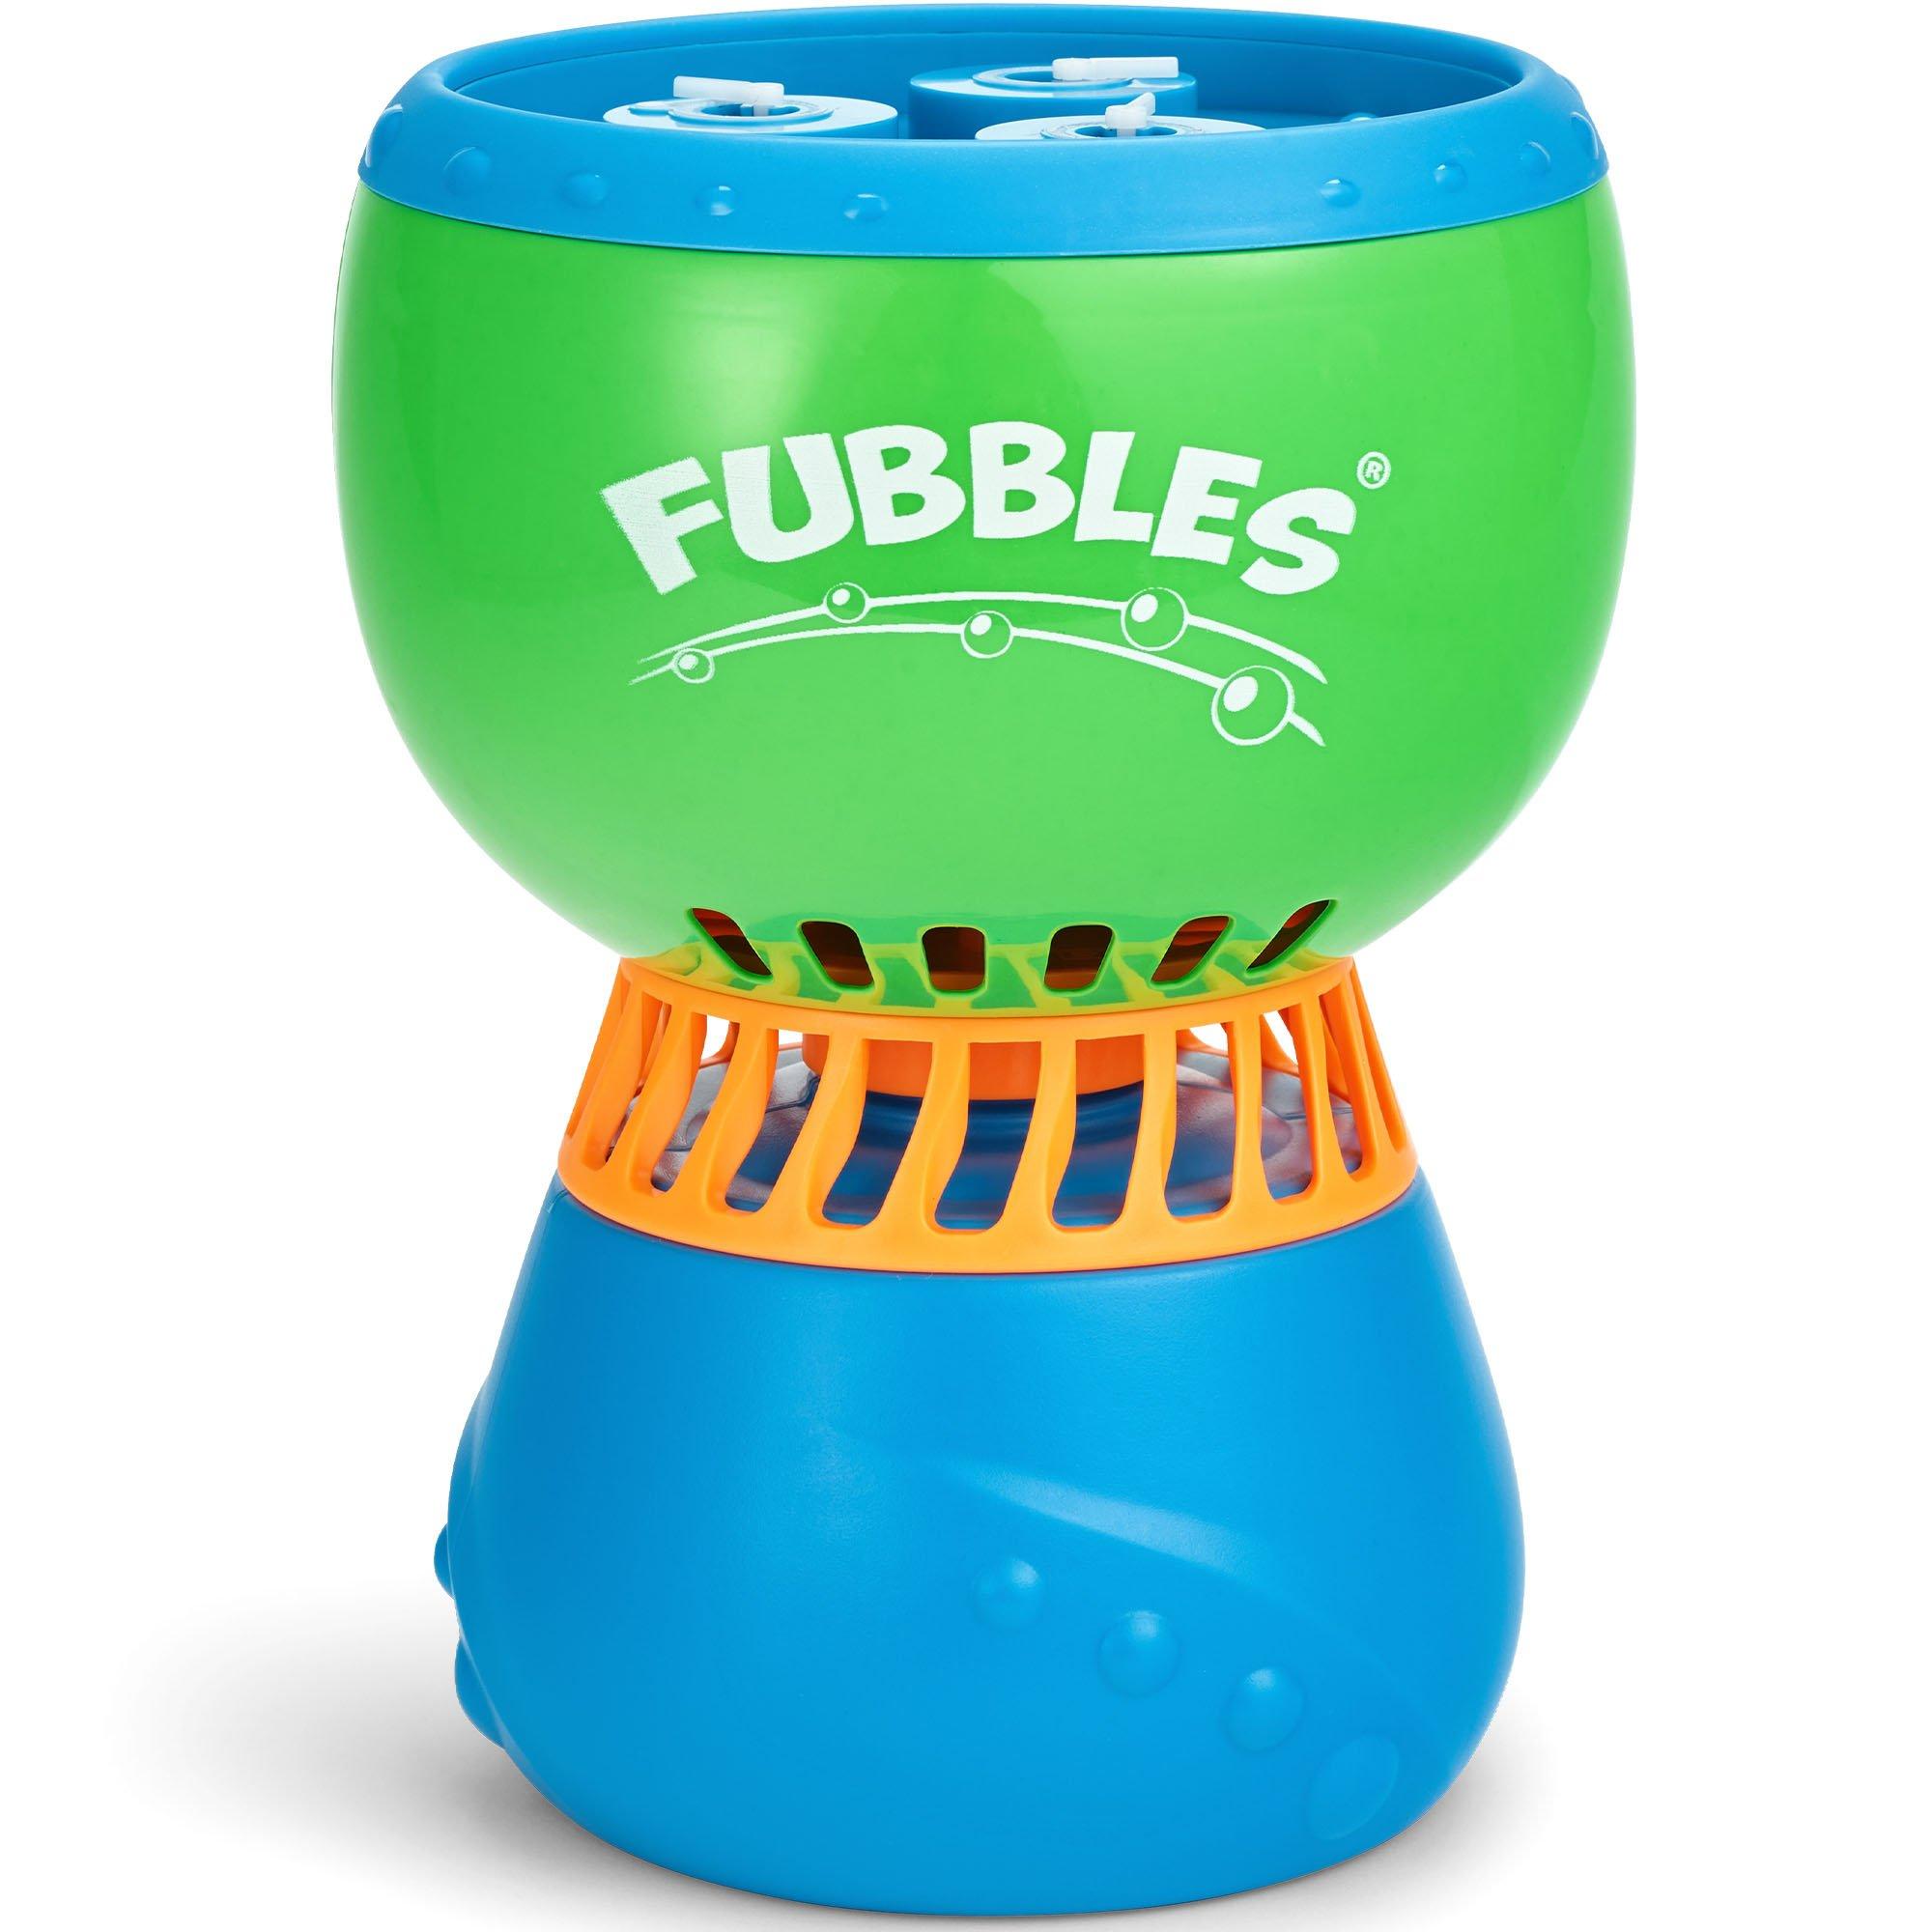 Fubbles Mini Bubble Blower Machine: Non-Toxic, Battery Operated